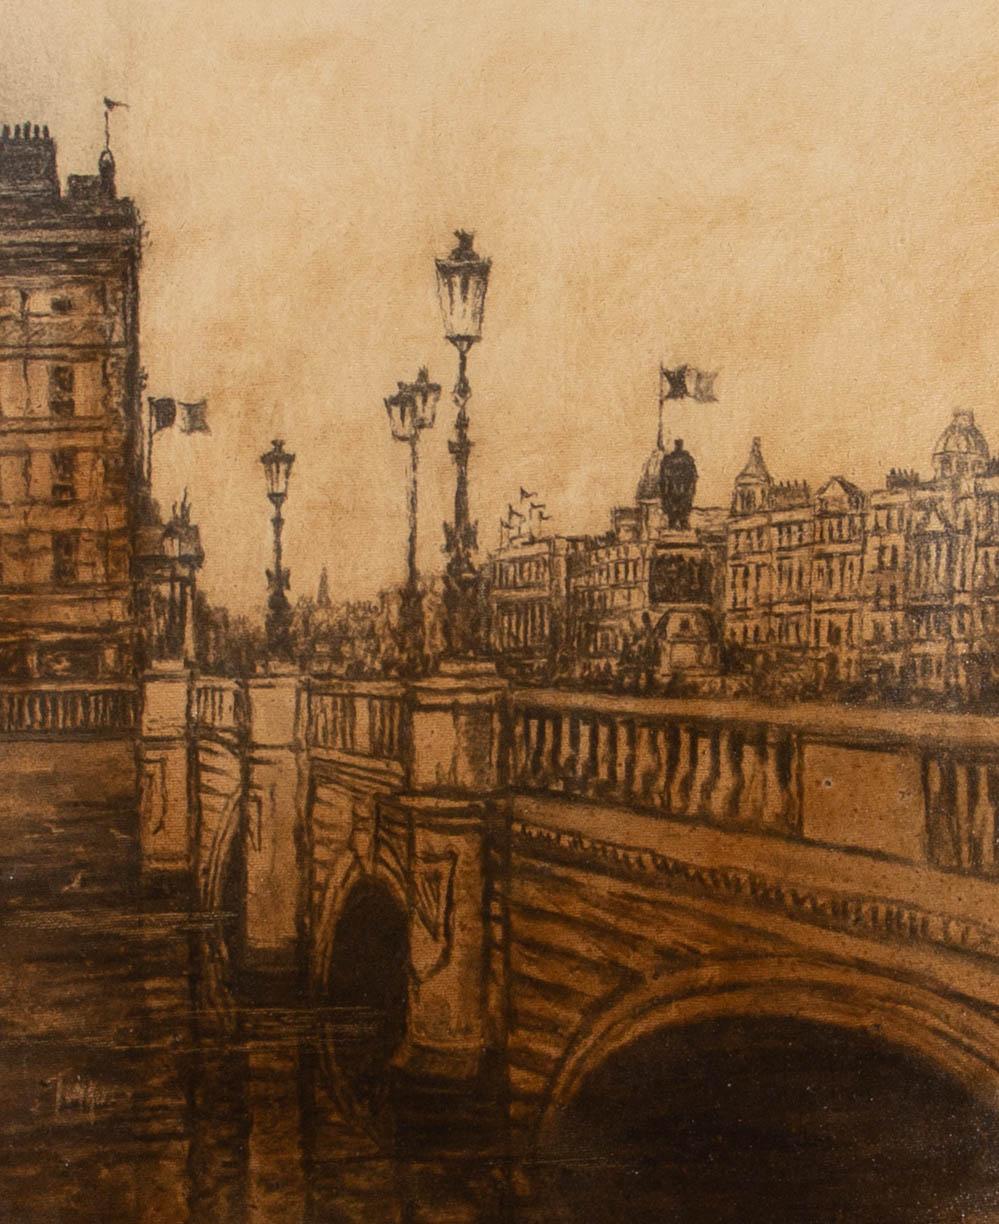 Représentation à l'huile monochrome du pont O'Connell à Dublin, en Irlande. L'artiste a signé dans le coin inférieur gauche et le tableau a été présenté dans un cadre doré avec un slip en lin. Sur panneau de toile.
